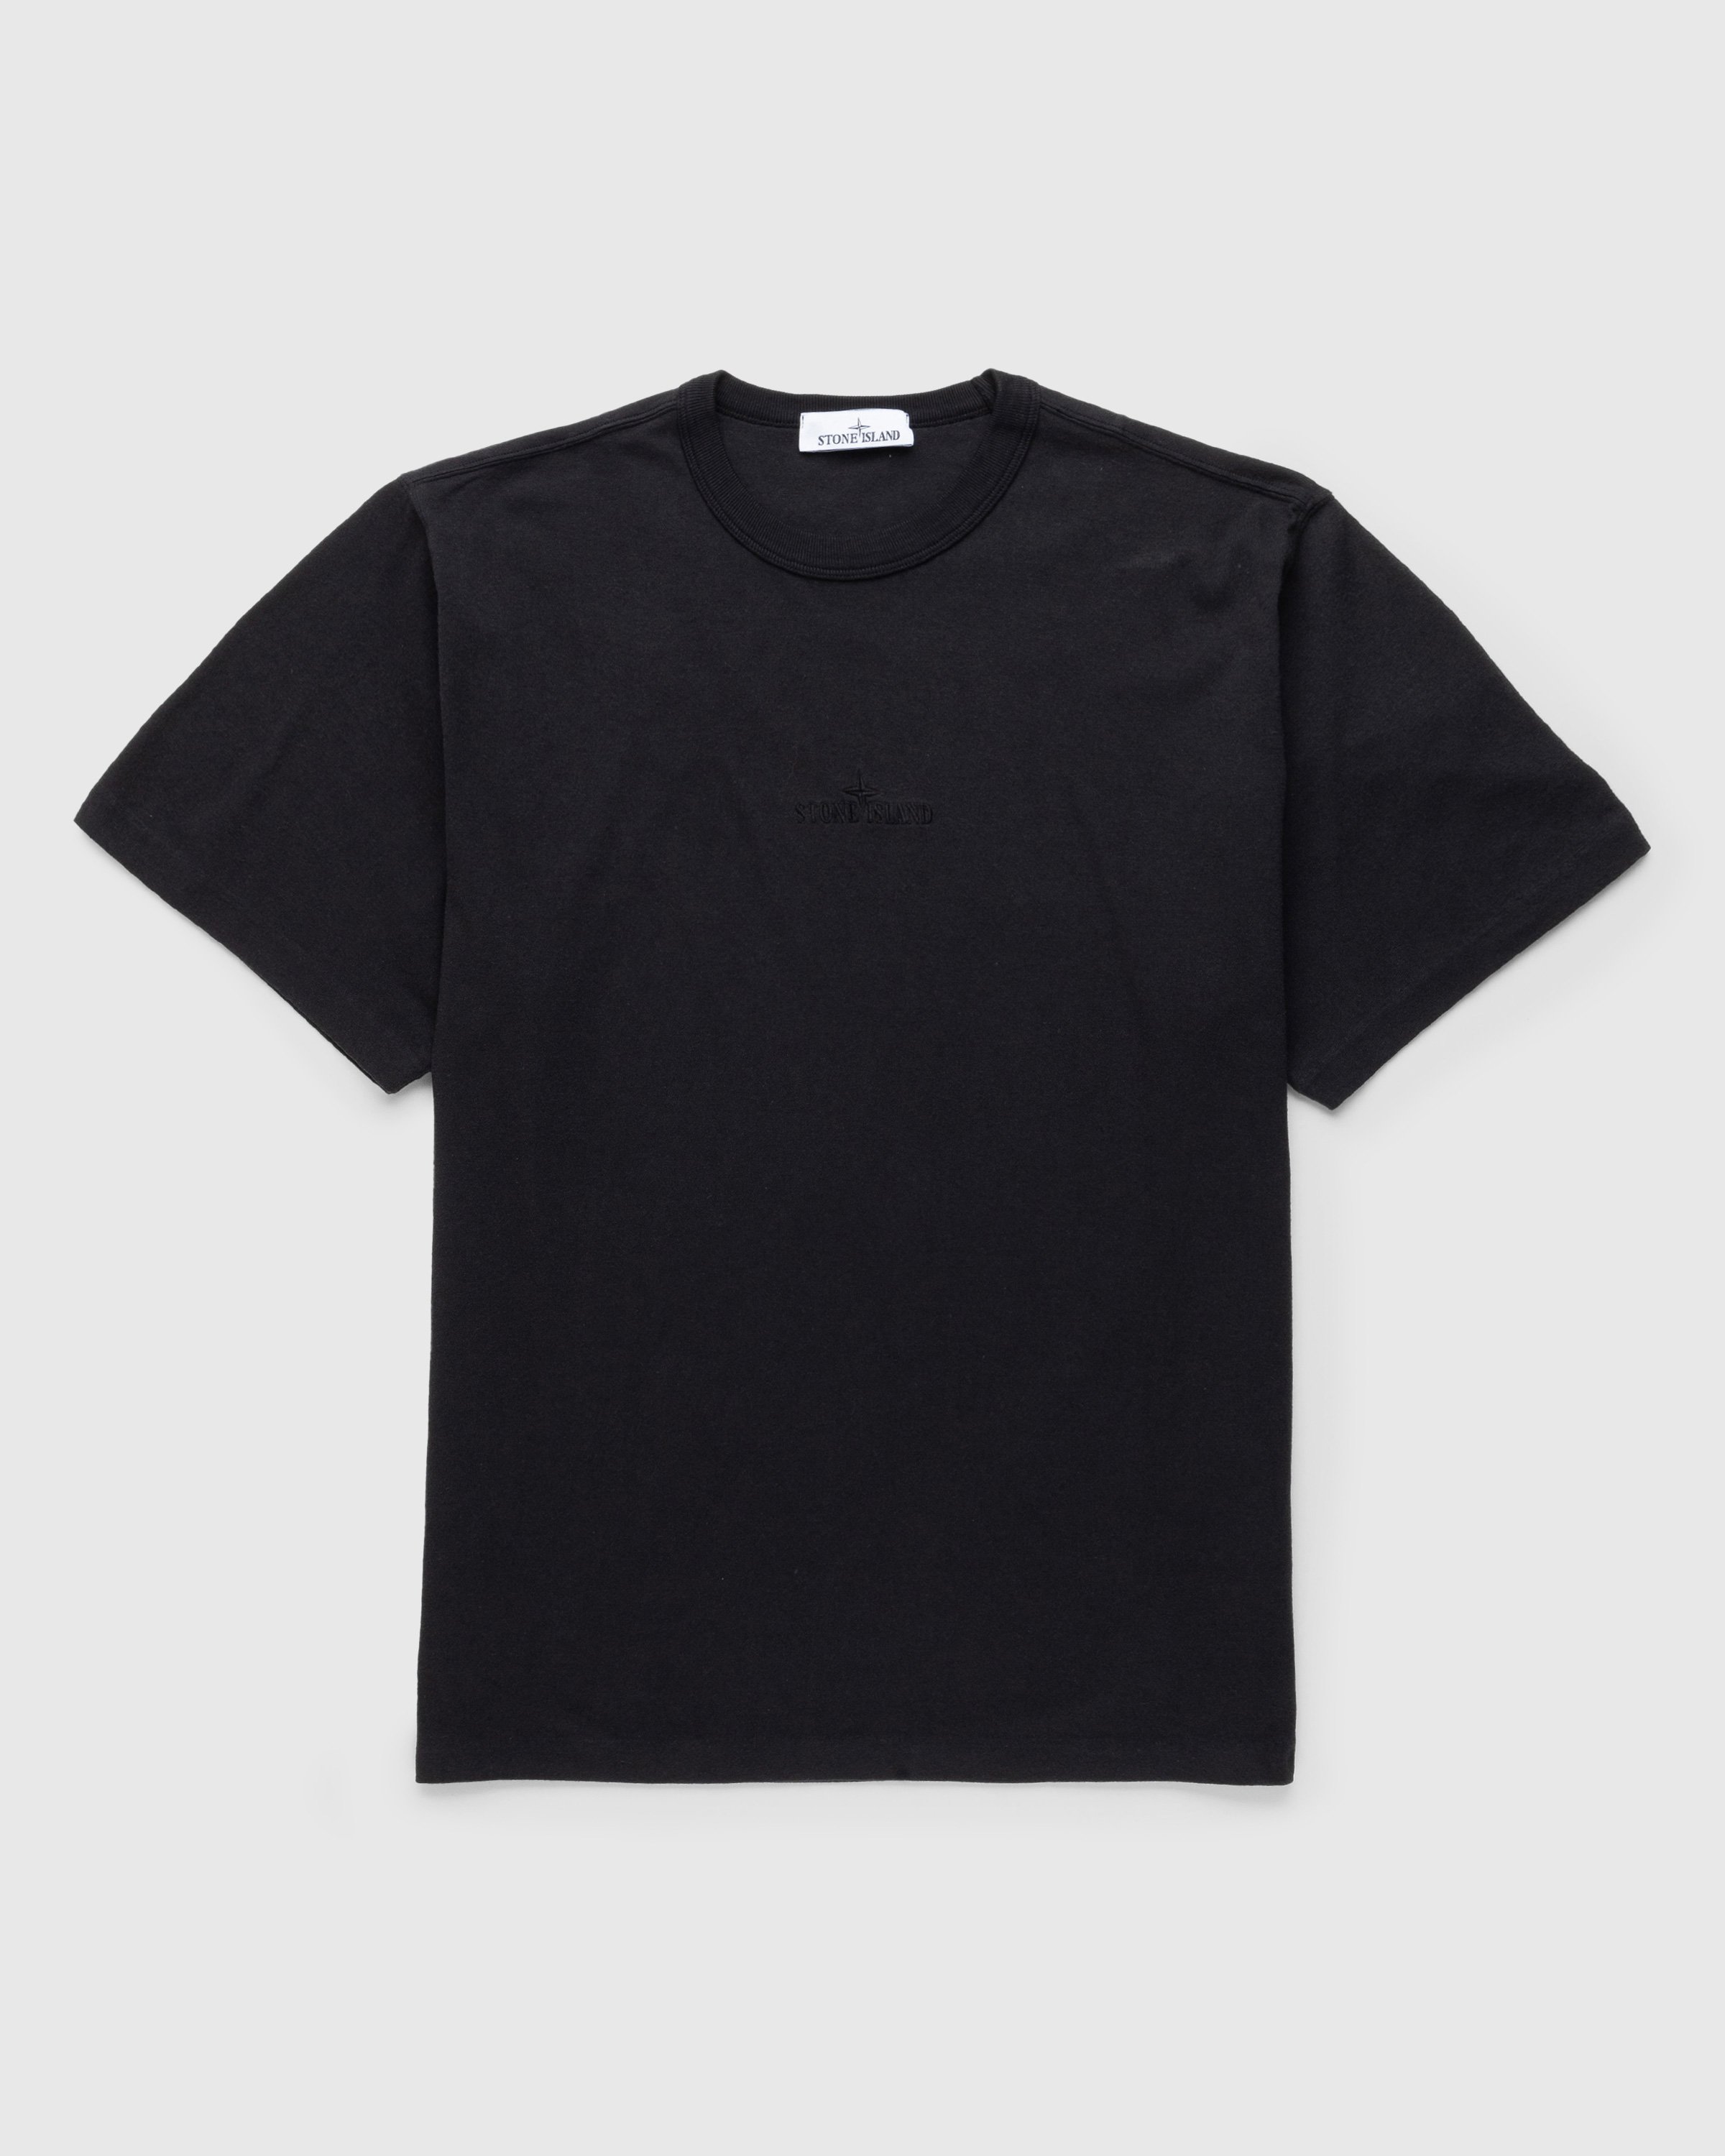 Stone Island - Garment-Dyed Logo T-Shirt Black - Clothing - Black - Image 1